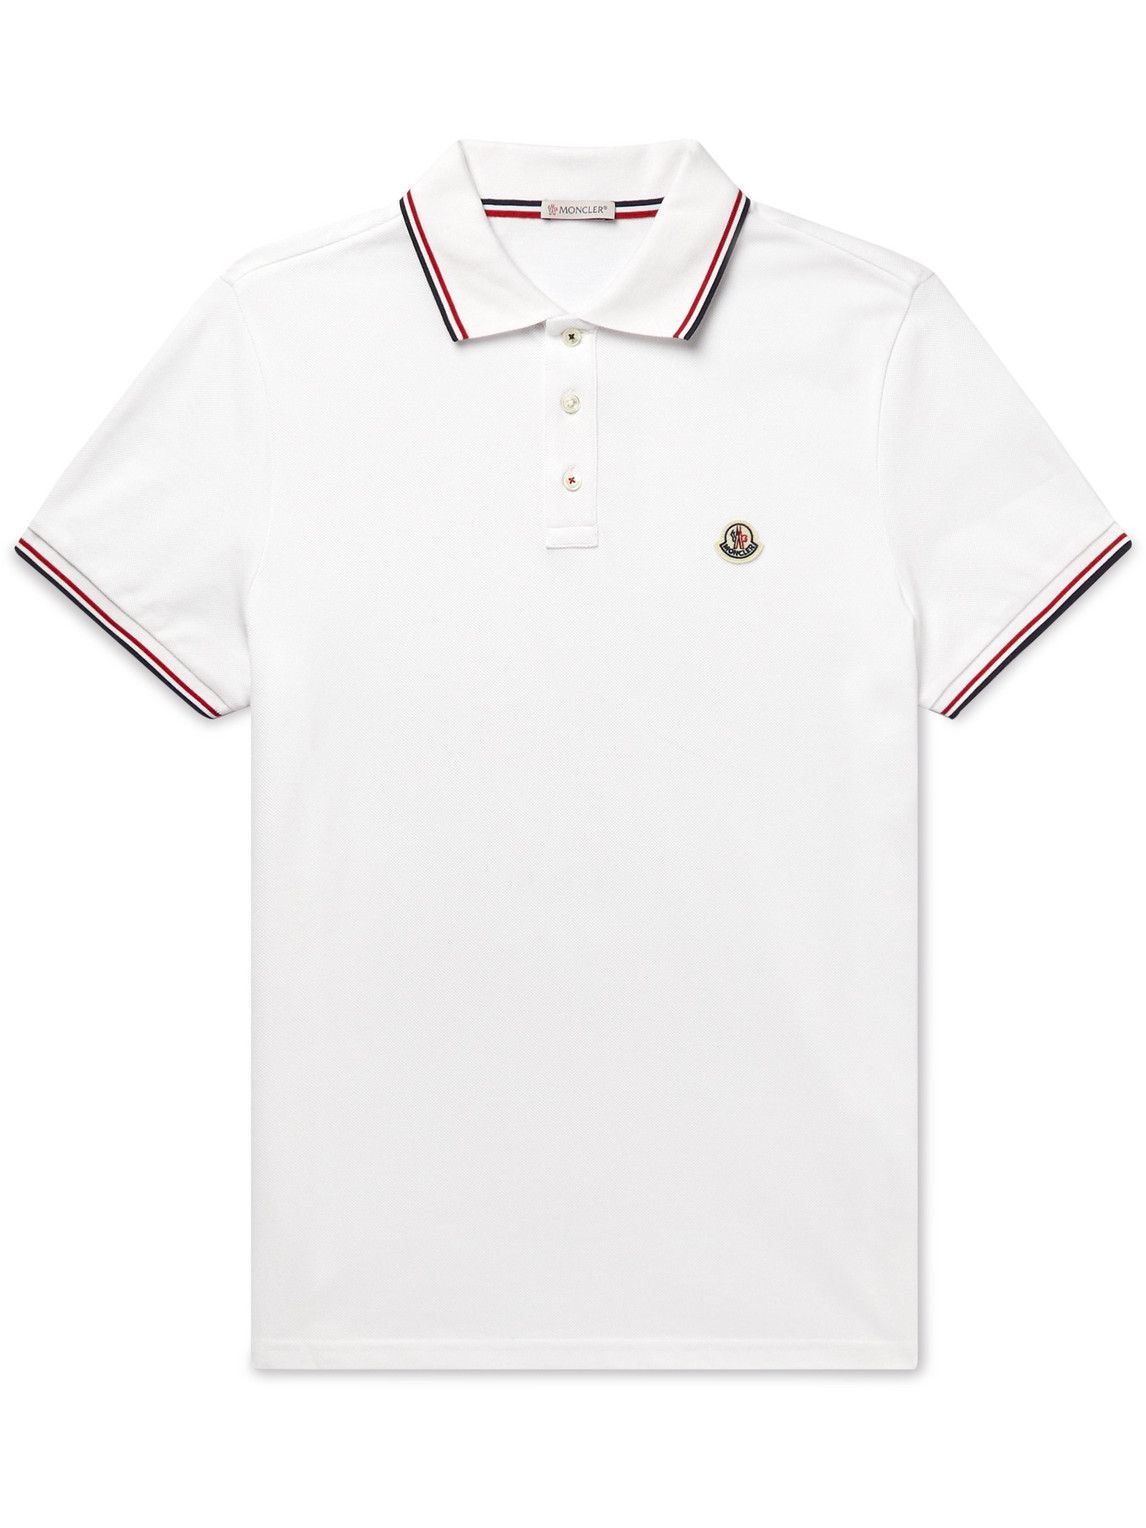 MONCLER - 2 Moncler 1952 Camp-Collar Logo-Appliquéd Nylon Shirt 